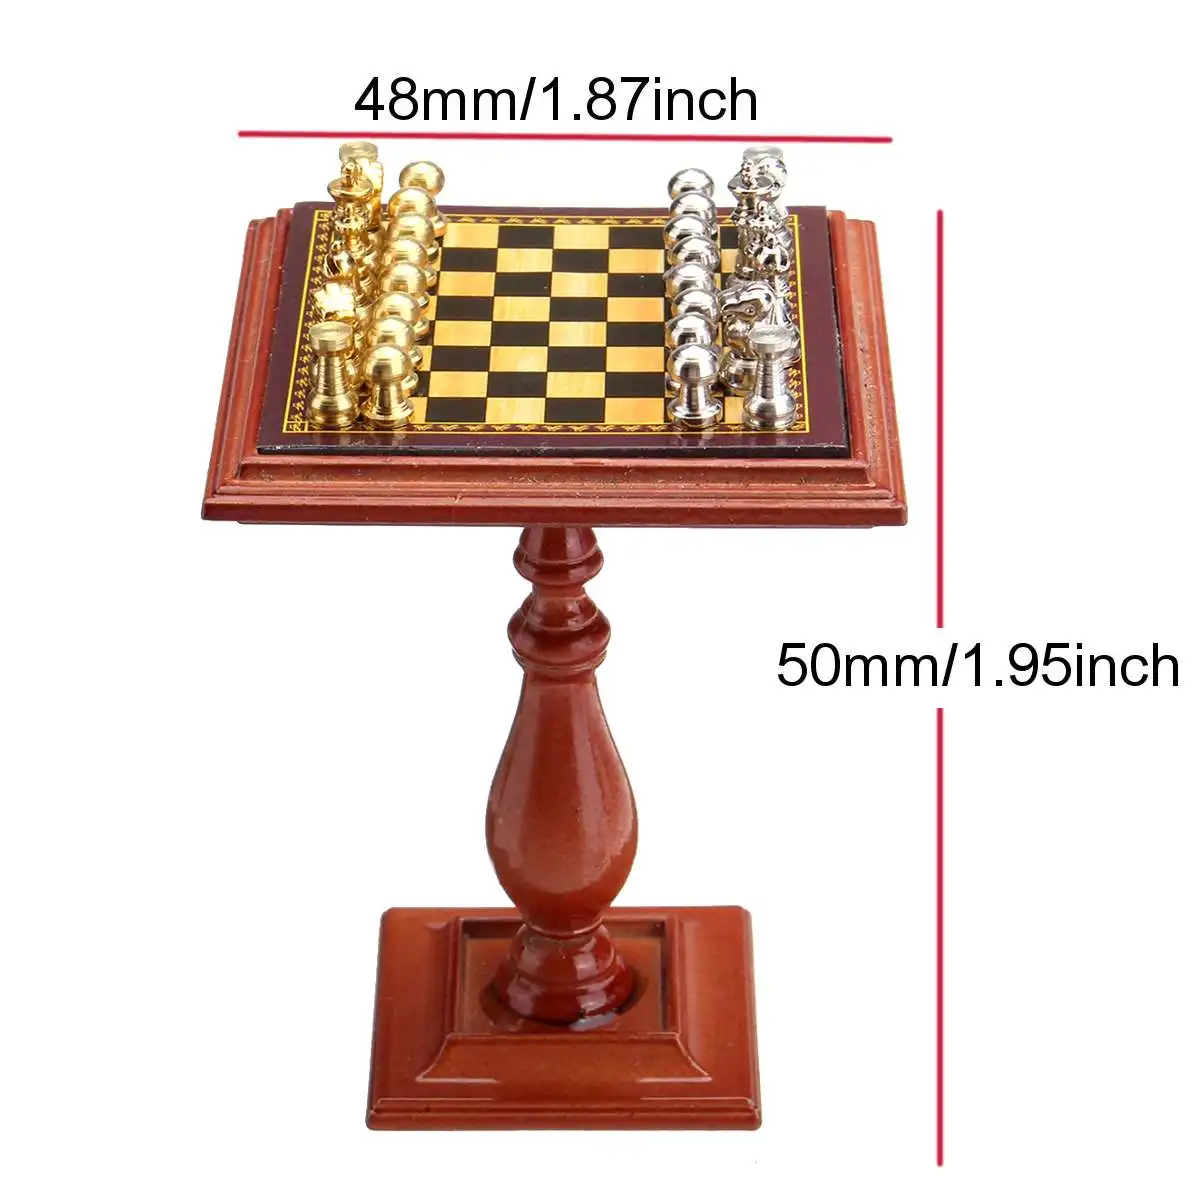 1:12, миниатюрный Шахматный набор с настольным магнитом, шахматные фигуры, развлекательная мини-шахматная игра, подставка, миниатюрная сцена, модель, игровая игрушка